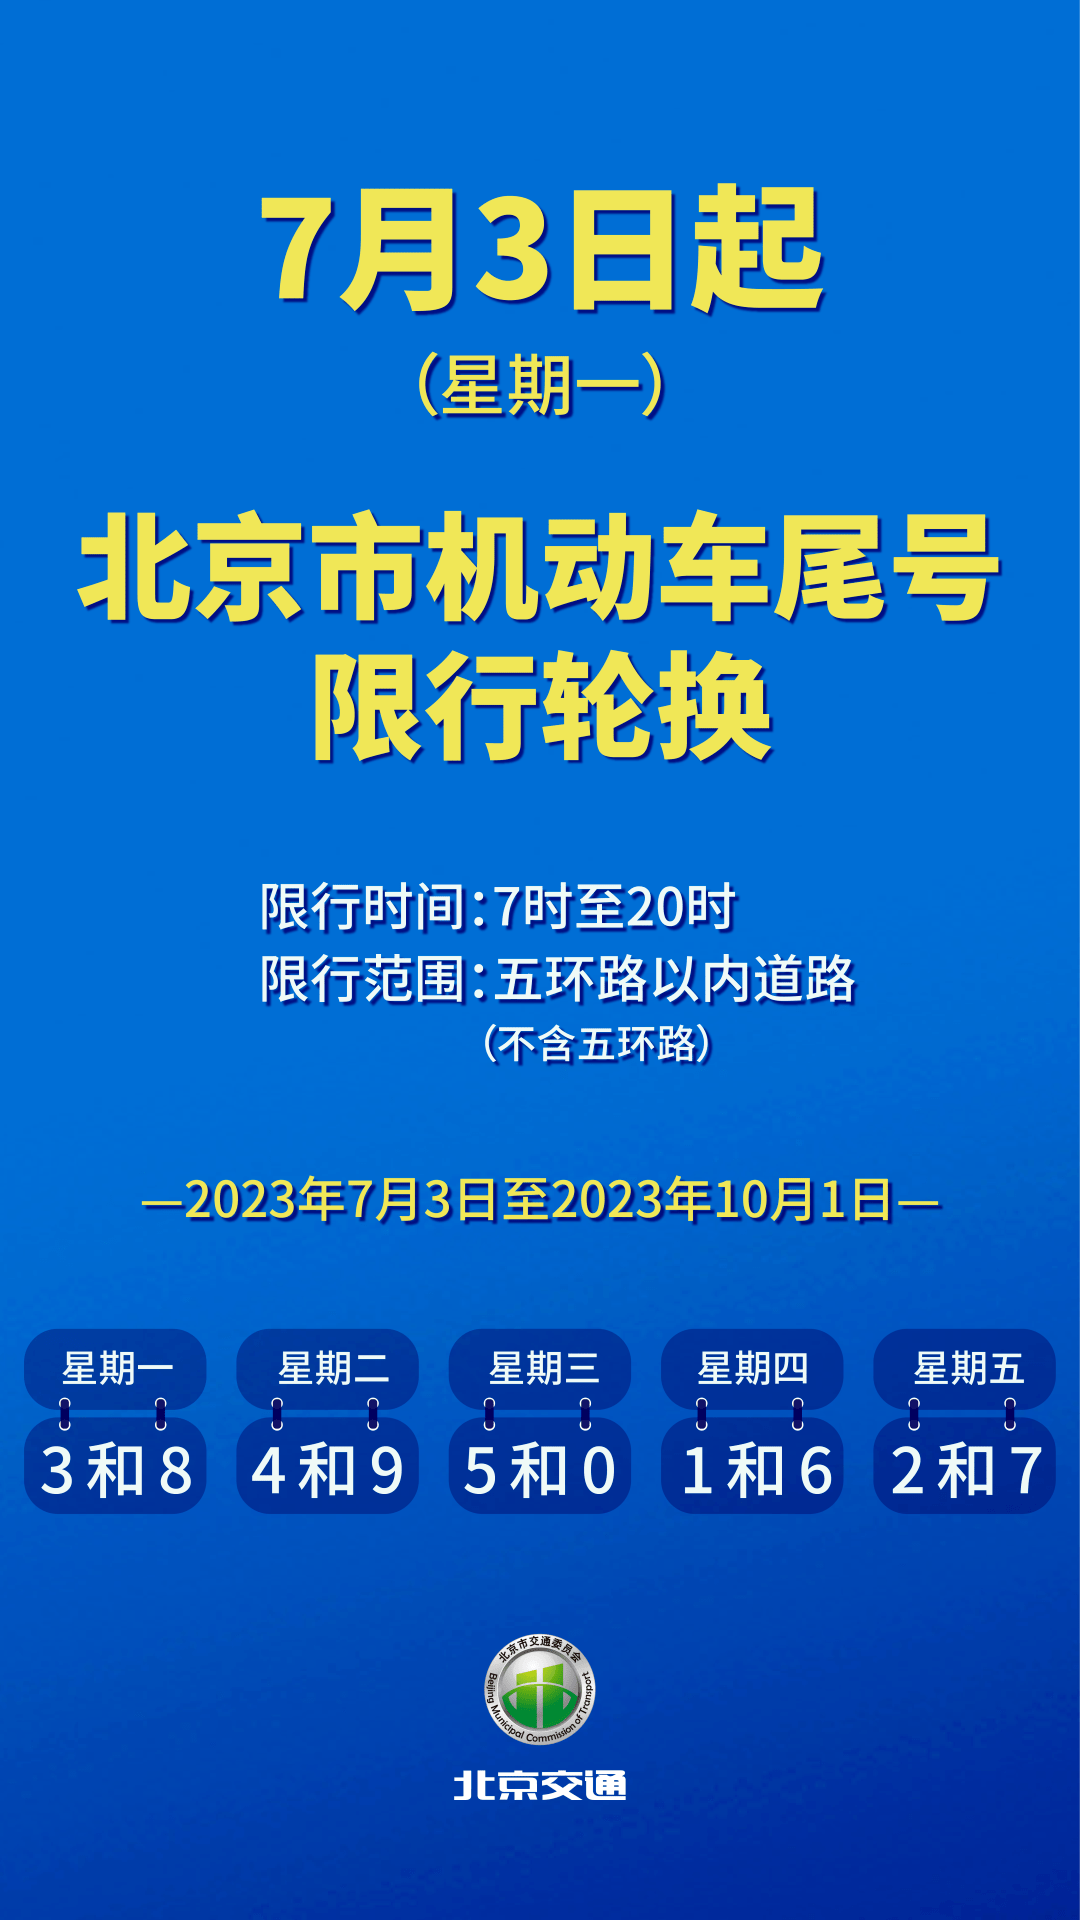 7月4日起机动车限行尾号轮换_信息提示_首都之窗_北京市人民政府门户网站